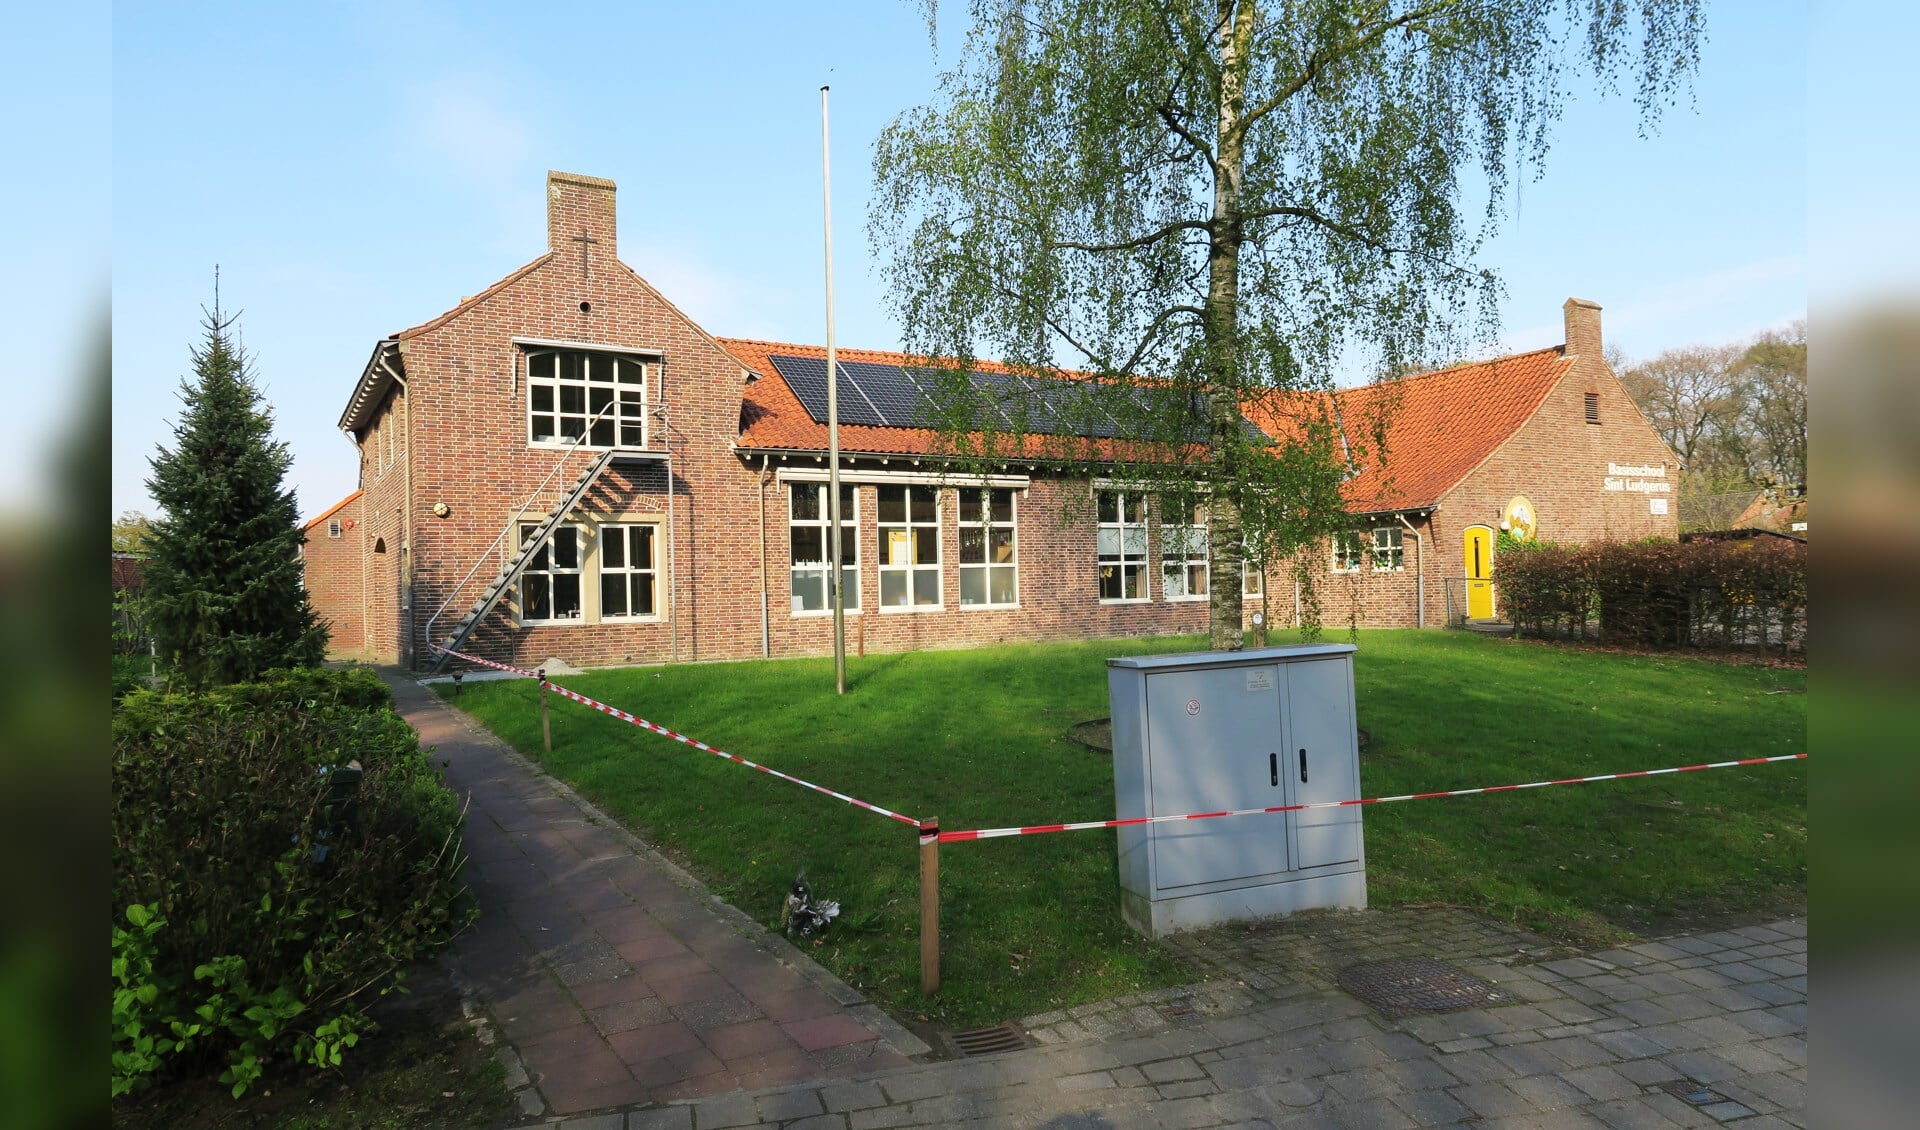 De in 1950 gebouwde Sint Ludgerus basisschool in Zwolle is een goed voorbeeld van de traditionalistische stijl van de Delftse School. Foto: Theo Huijskes